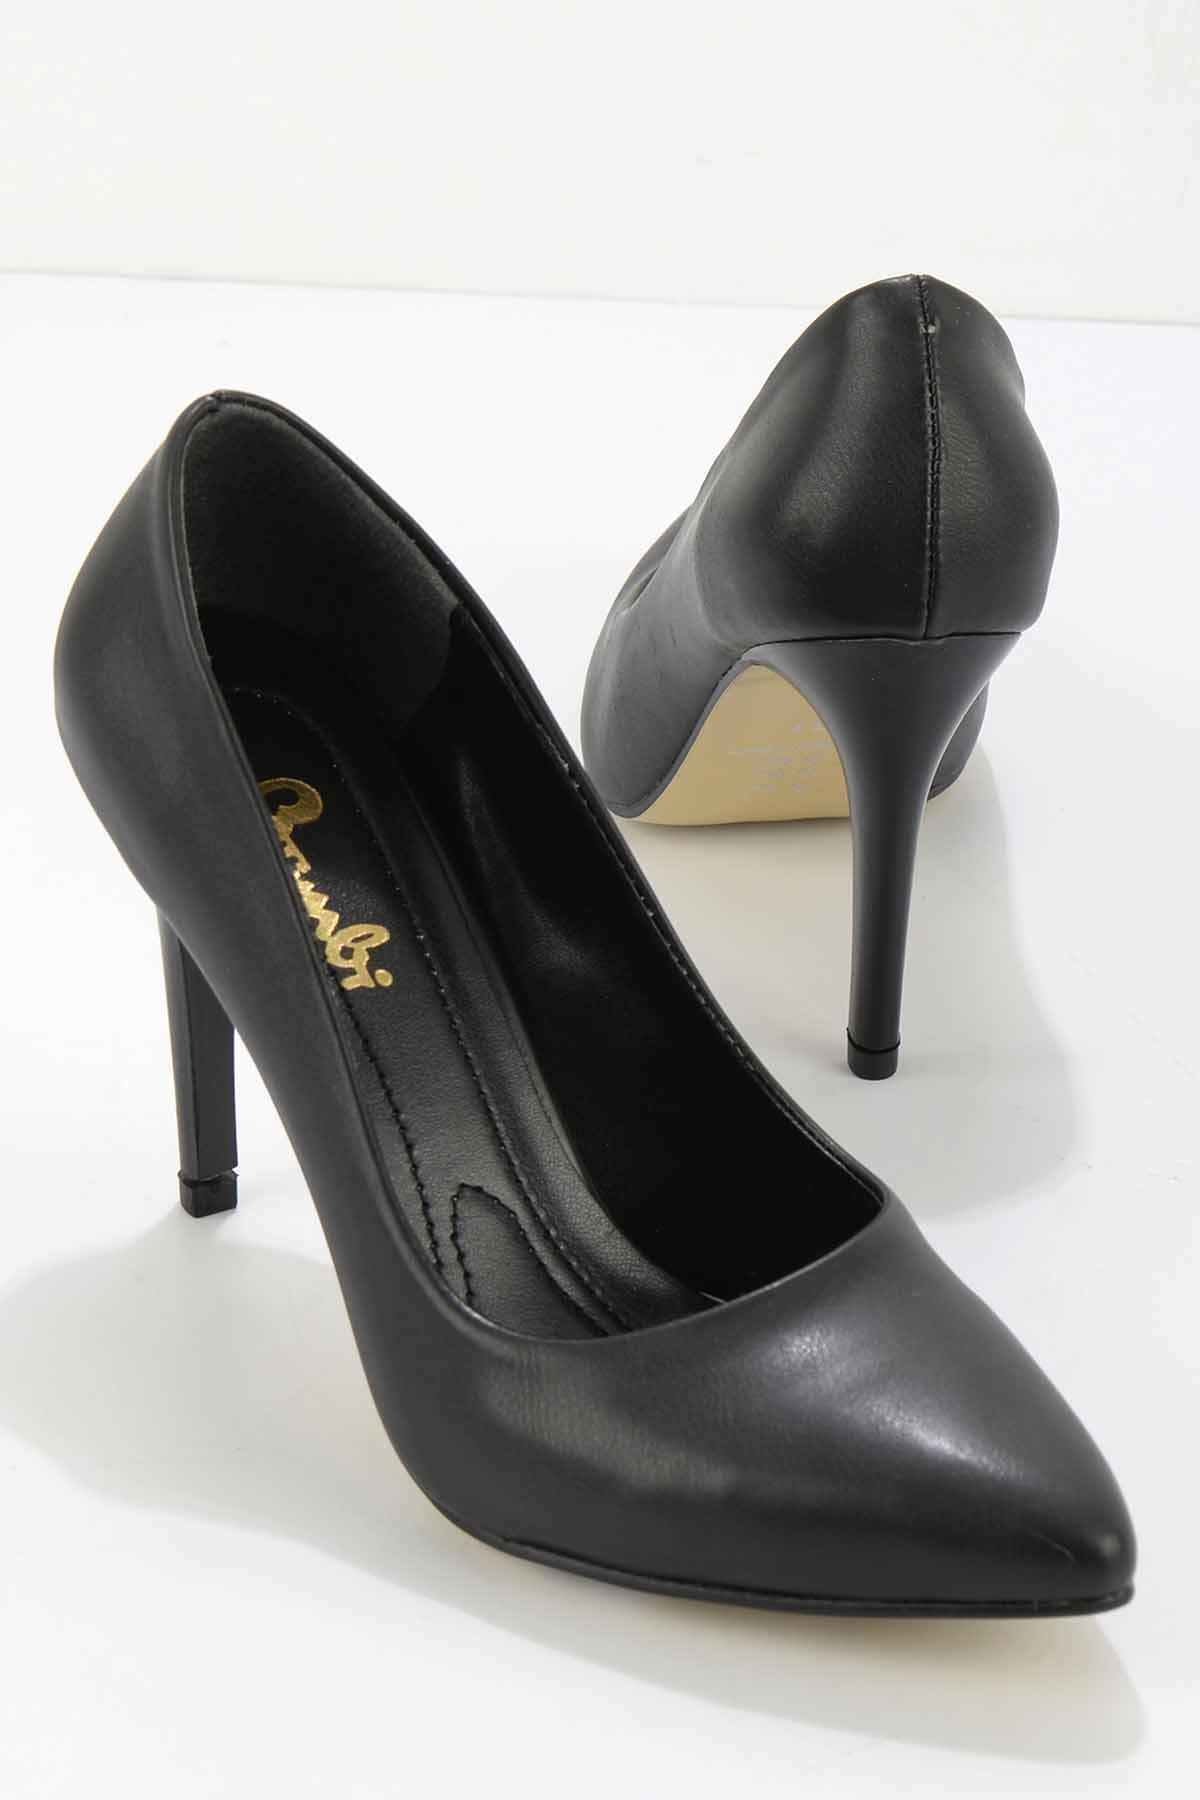 Bambi Siyah Kadın Klasik Topuklu Ayakkabı K01980050309